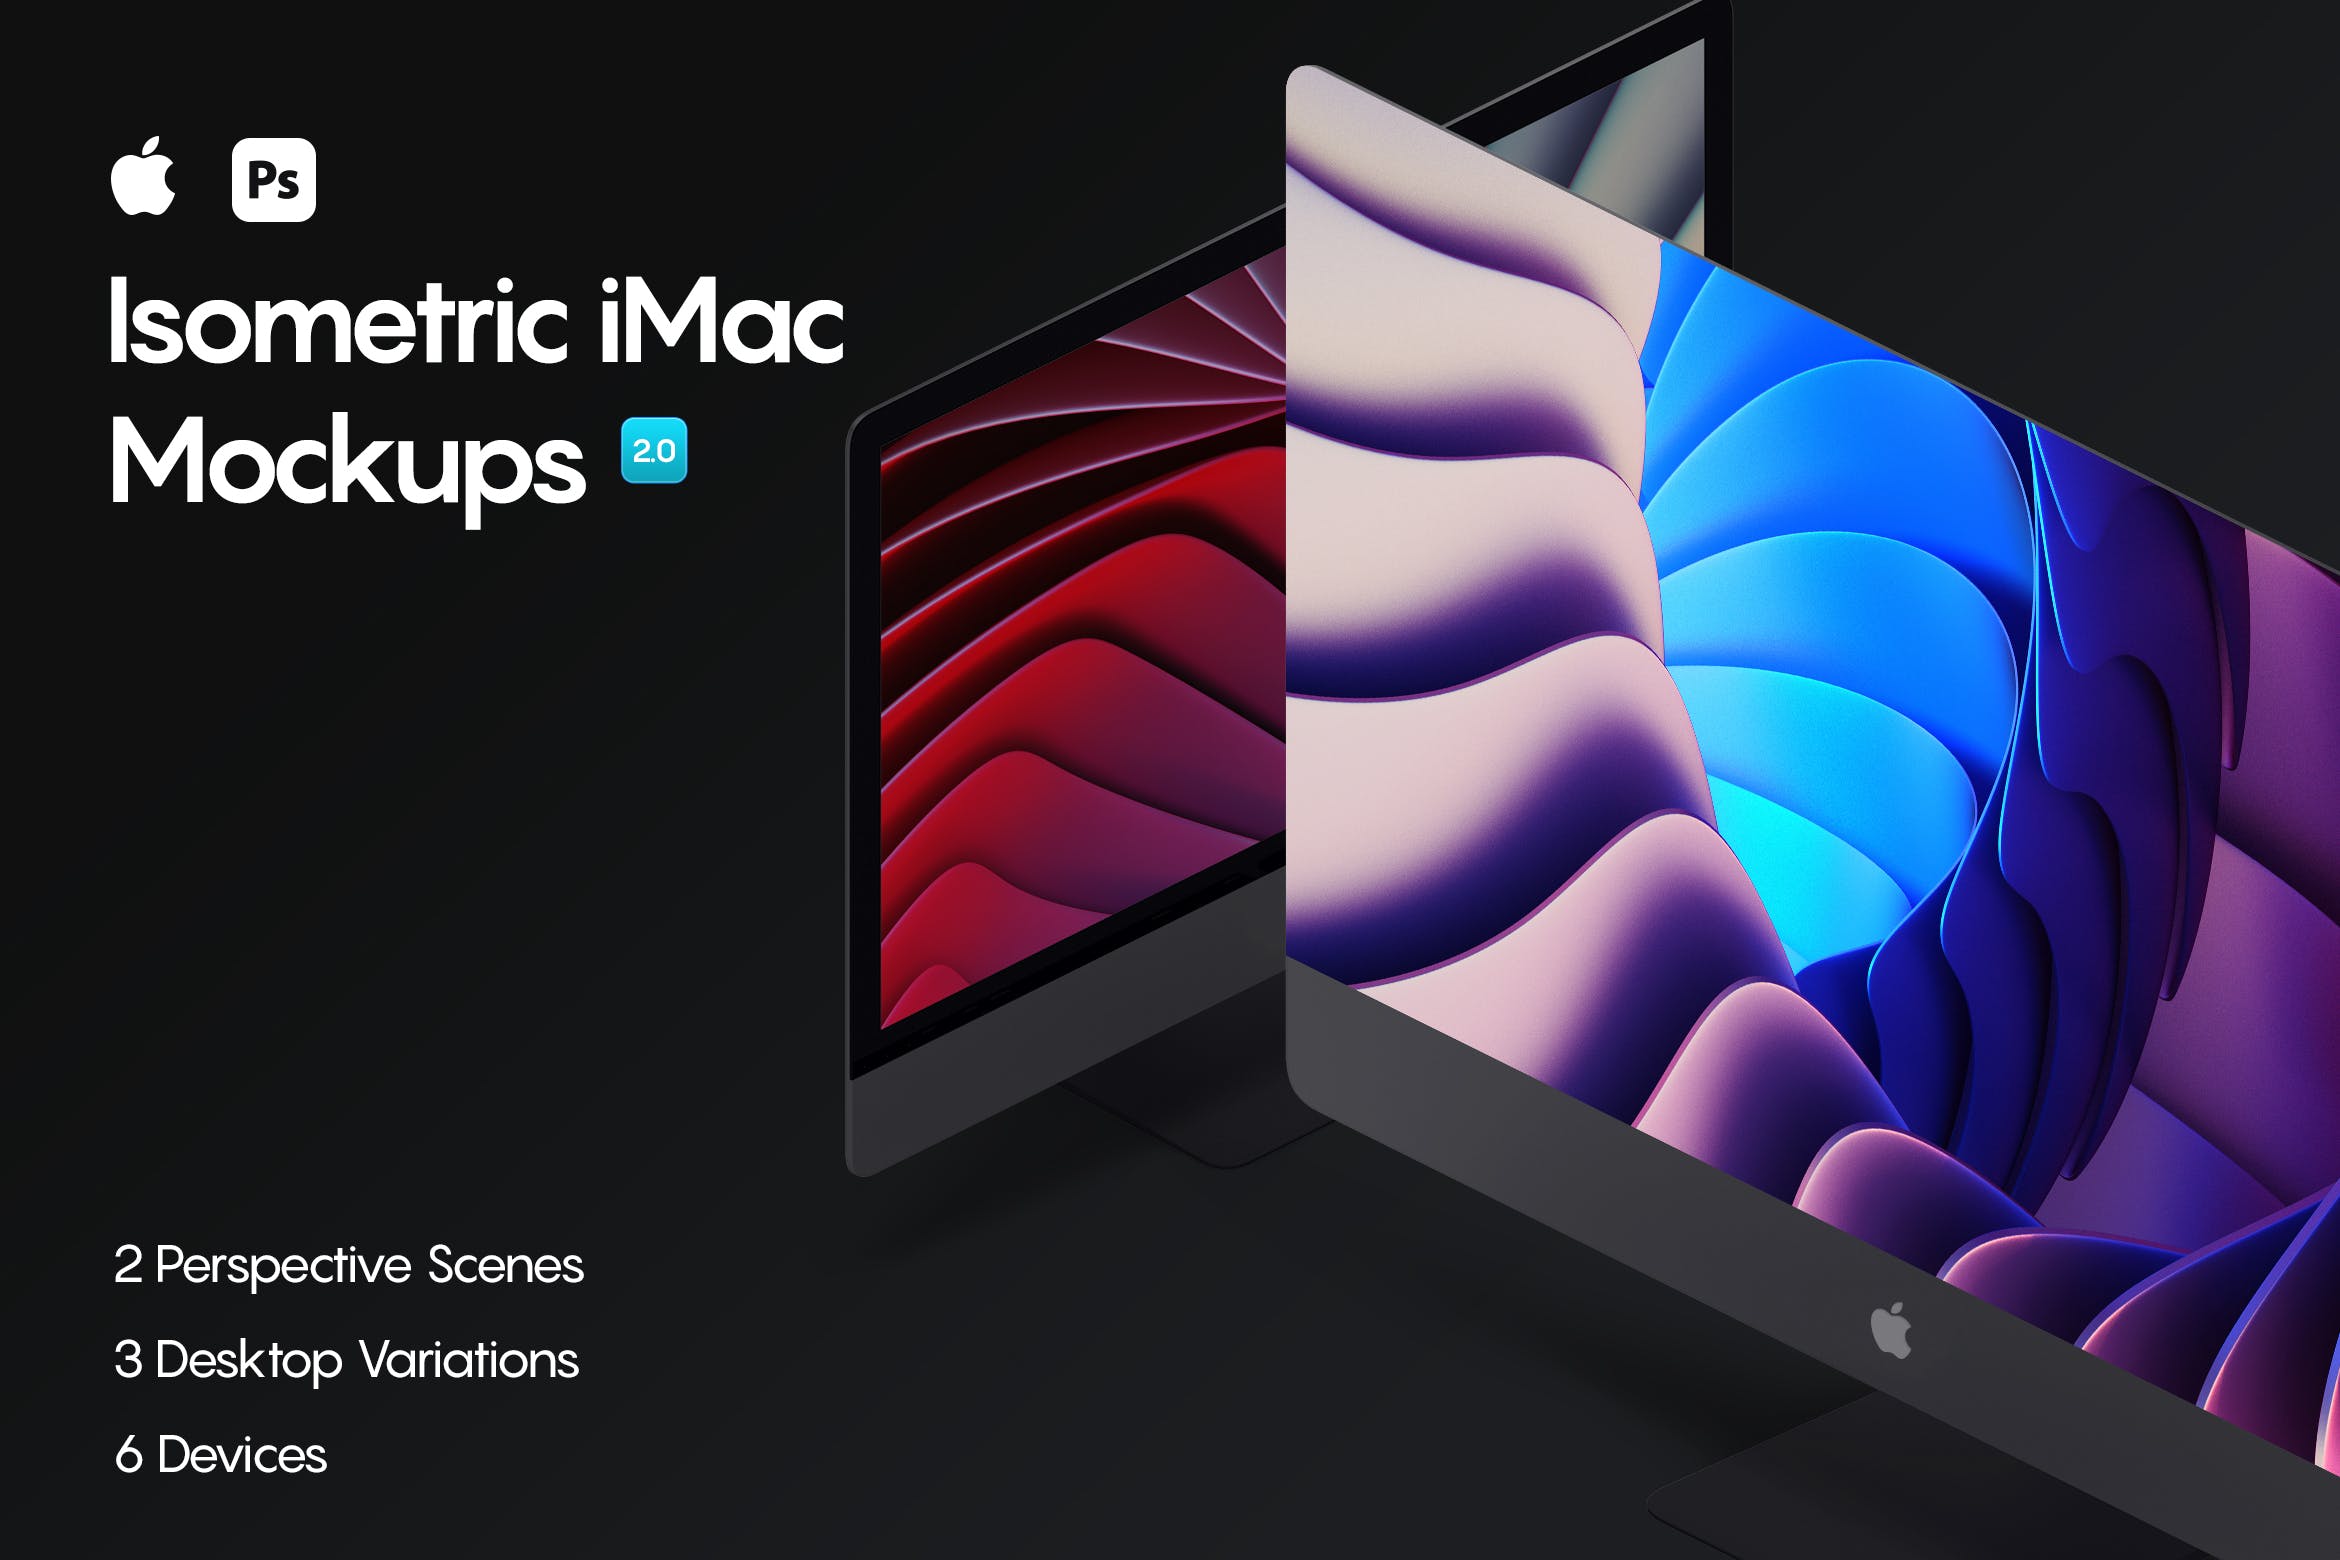 多场景电脑模板展示样机素材Isometric iMac Mockup 2.0